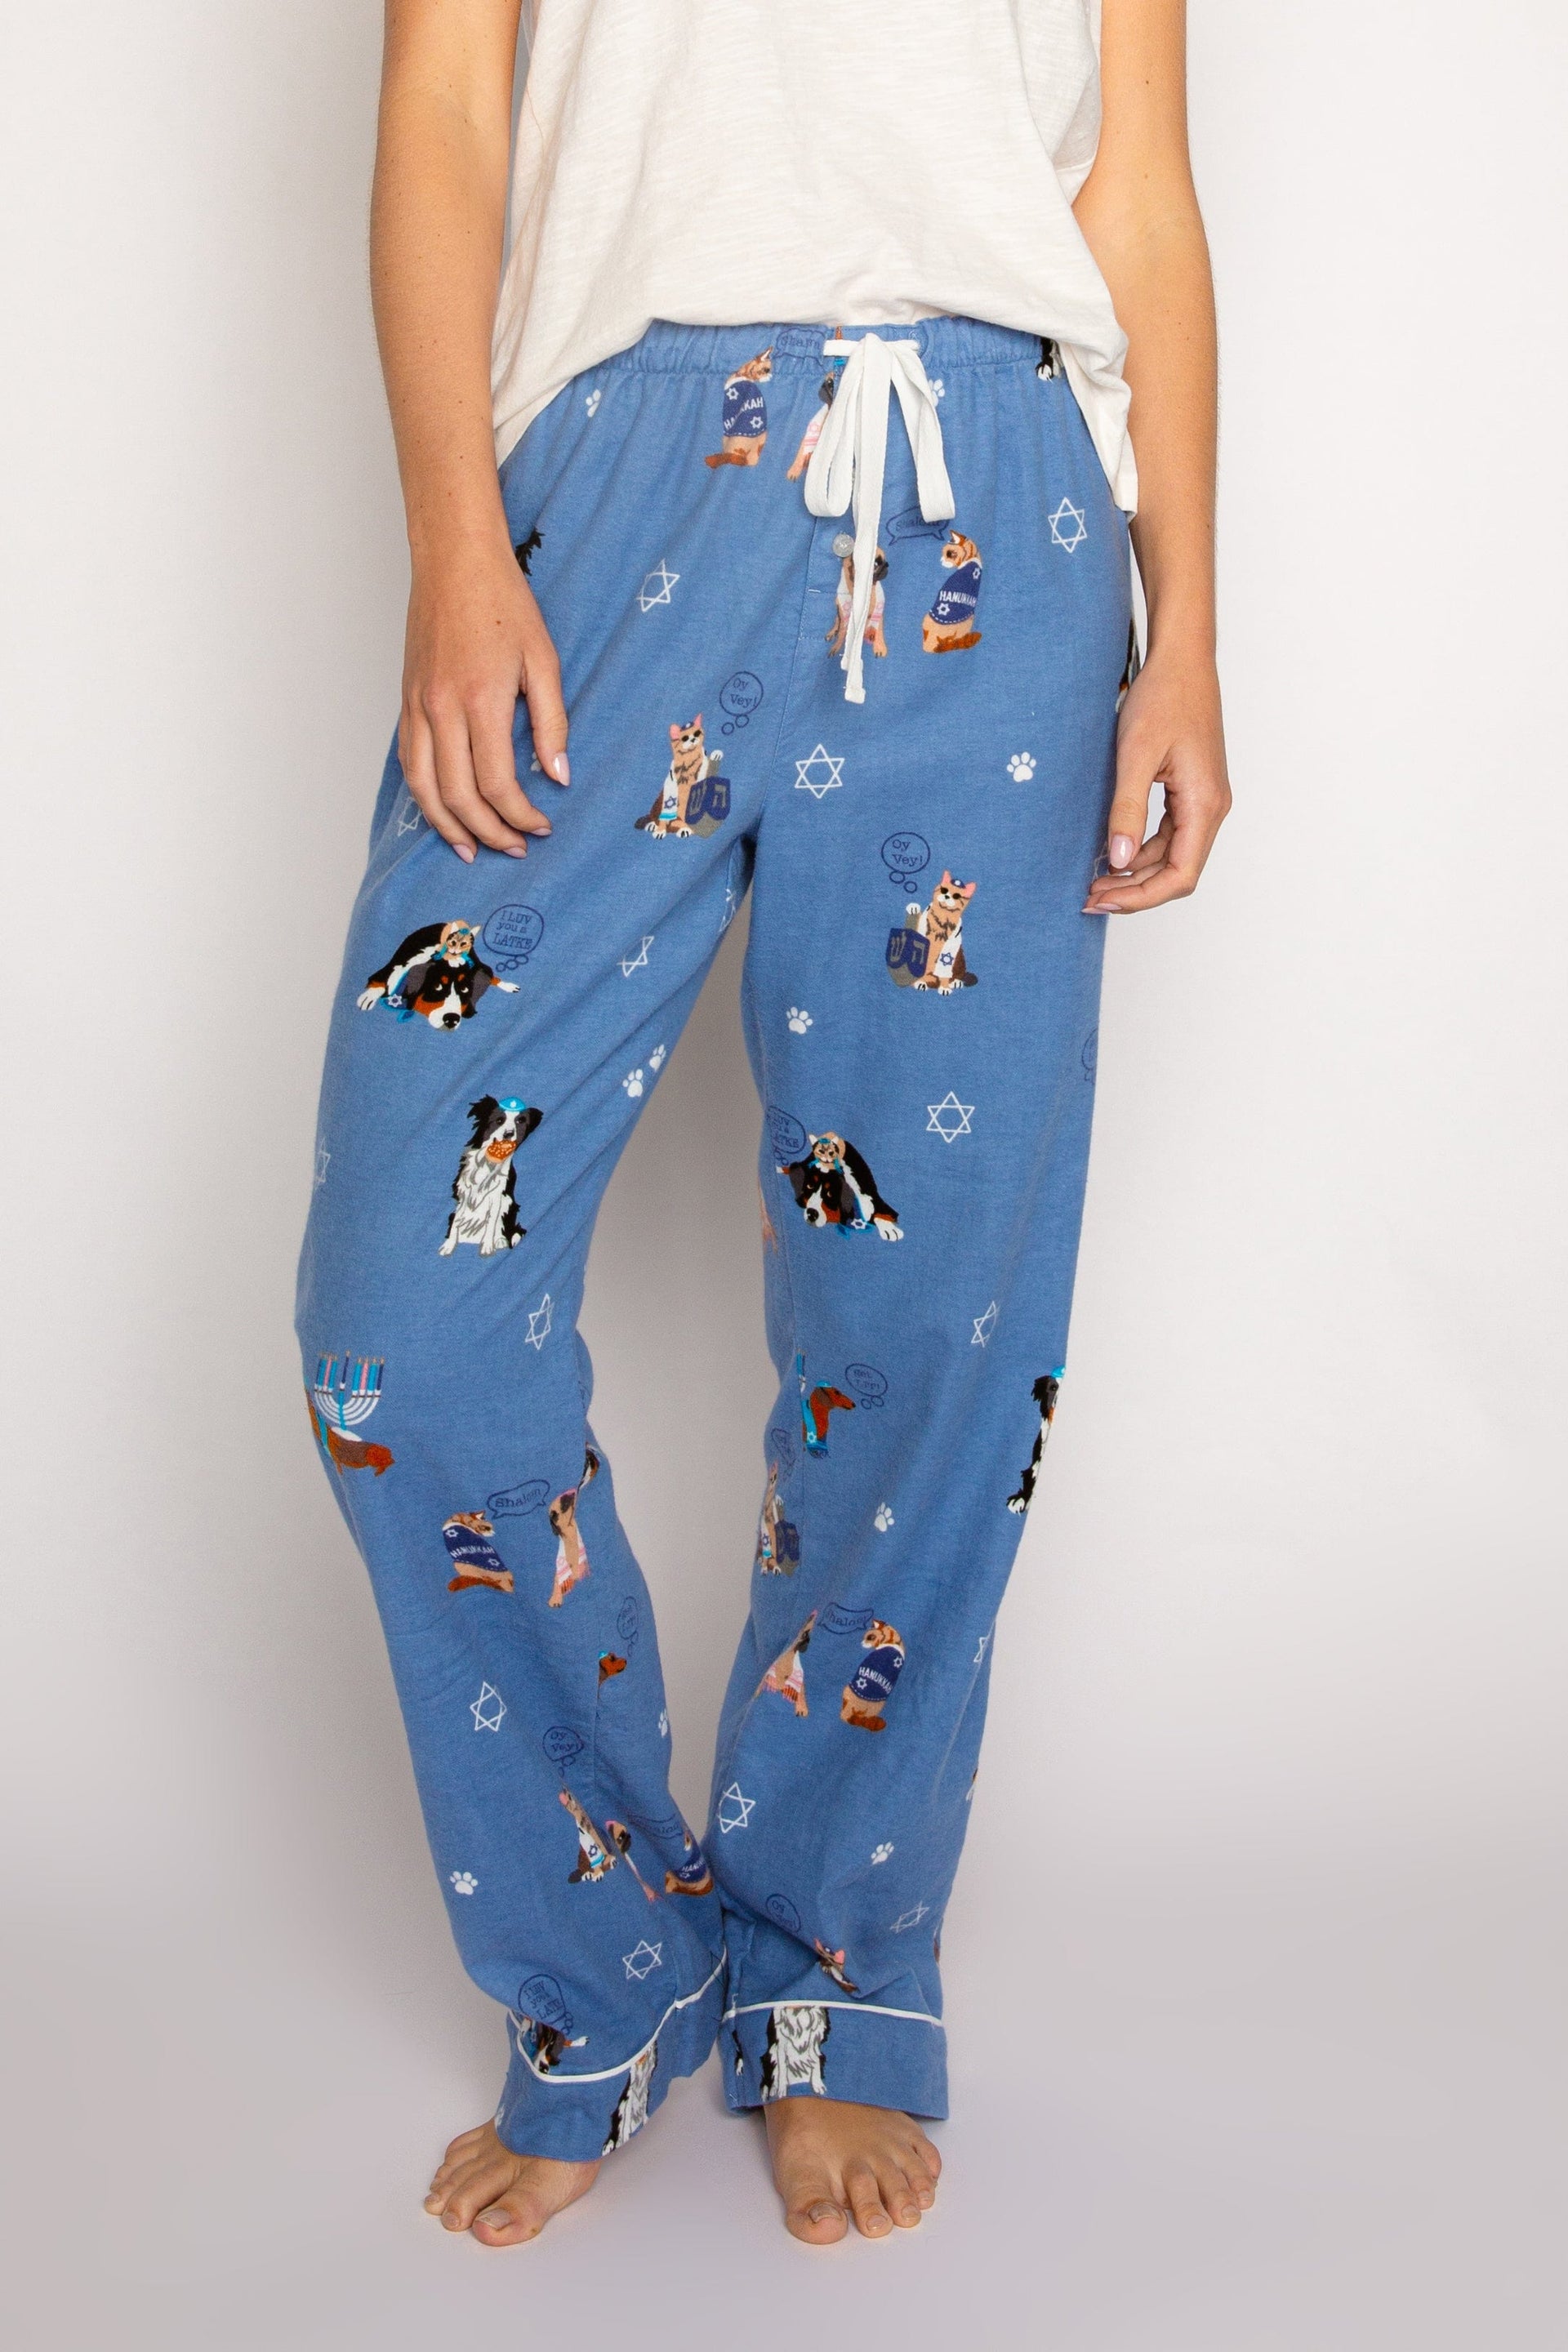 PJ Salvage Pajamas Love You A Latke Pajamas Pants by P.J. Salvage - Women